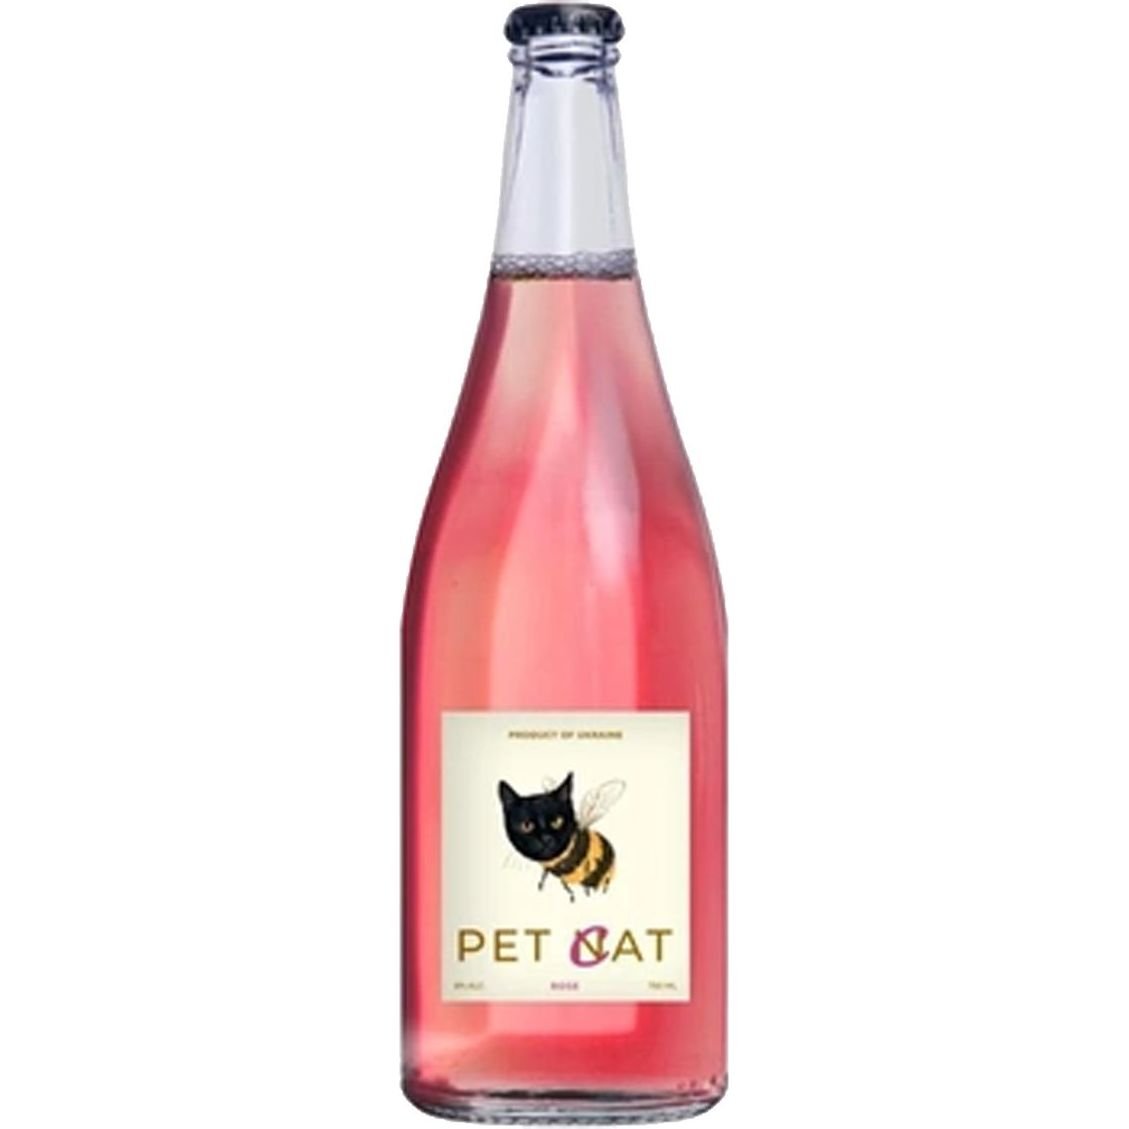 Мед питьевой игристый Pet-Cat Rose сухой розовый 8% 0.75 л - фото 1